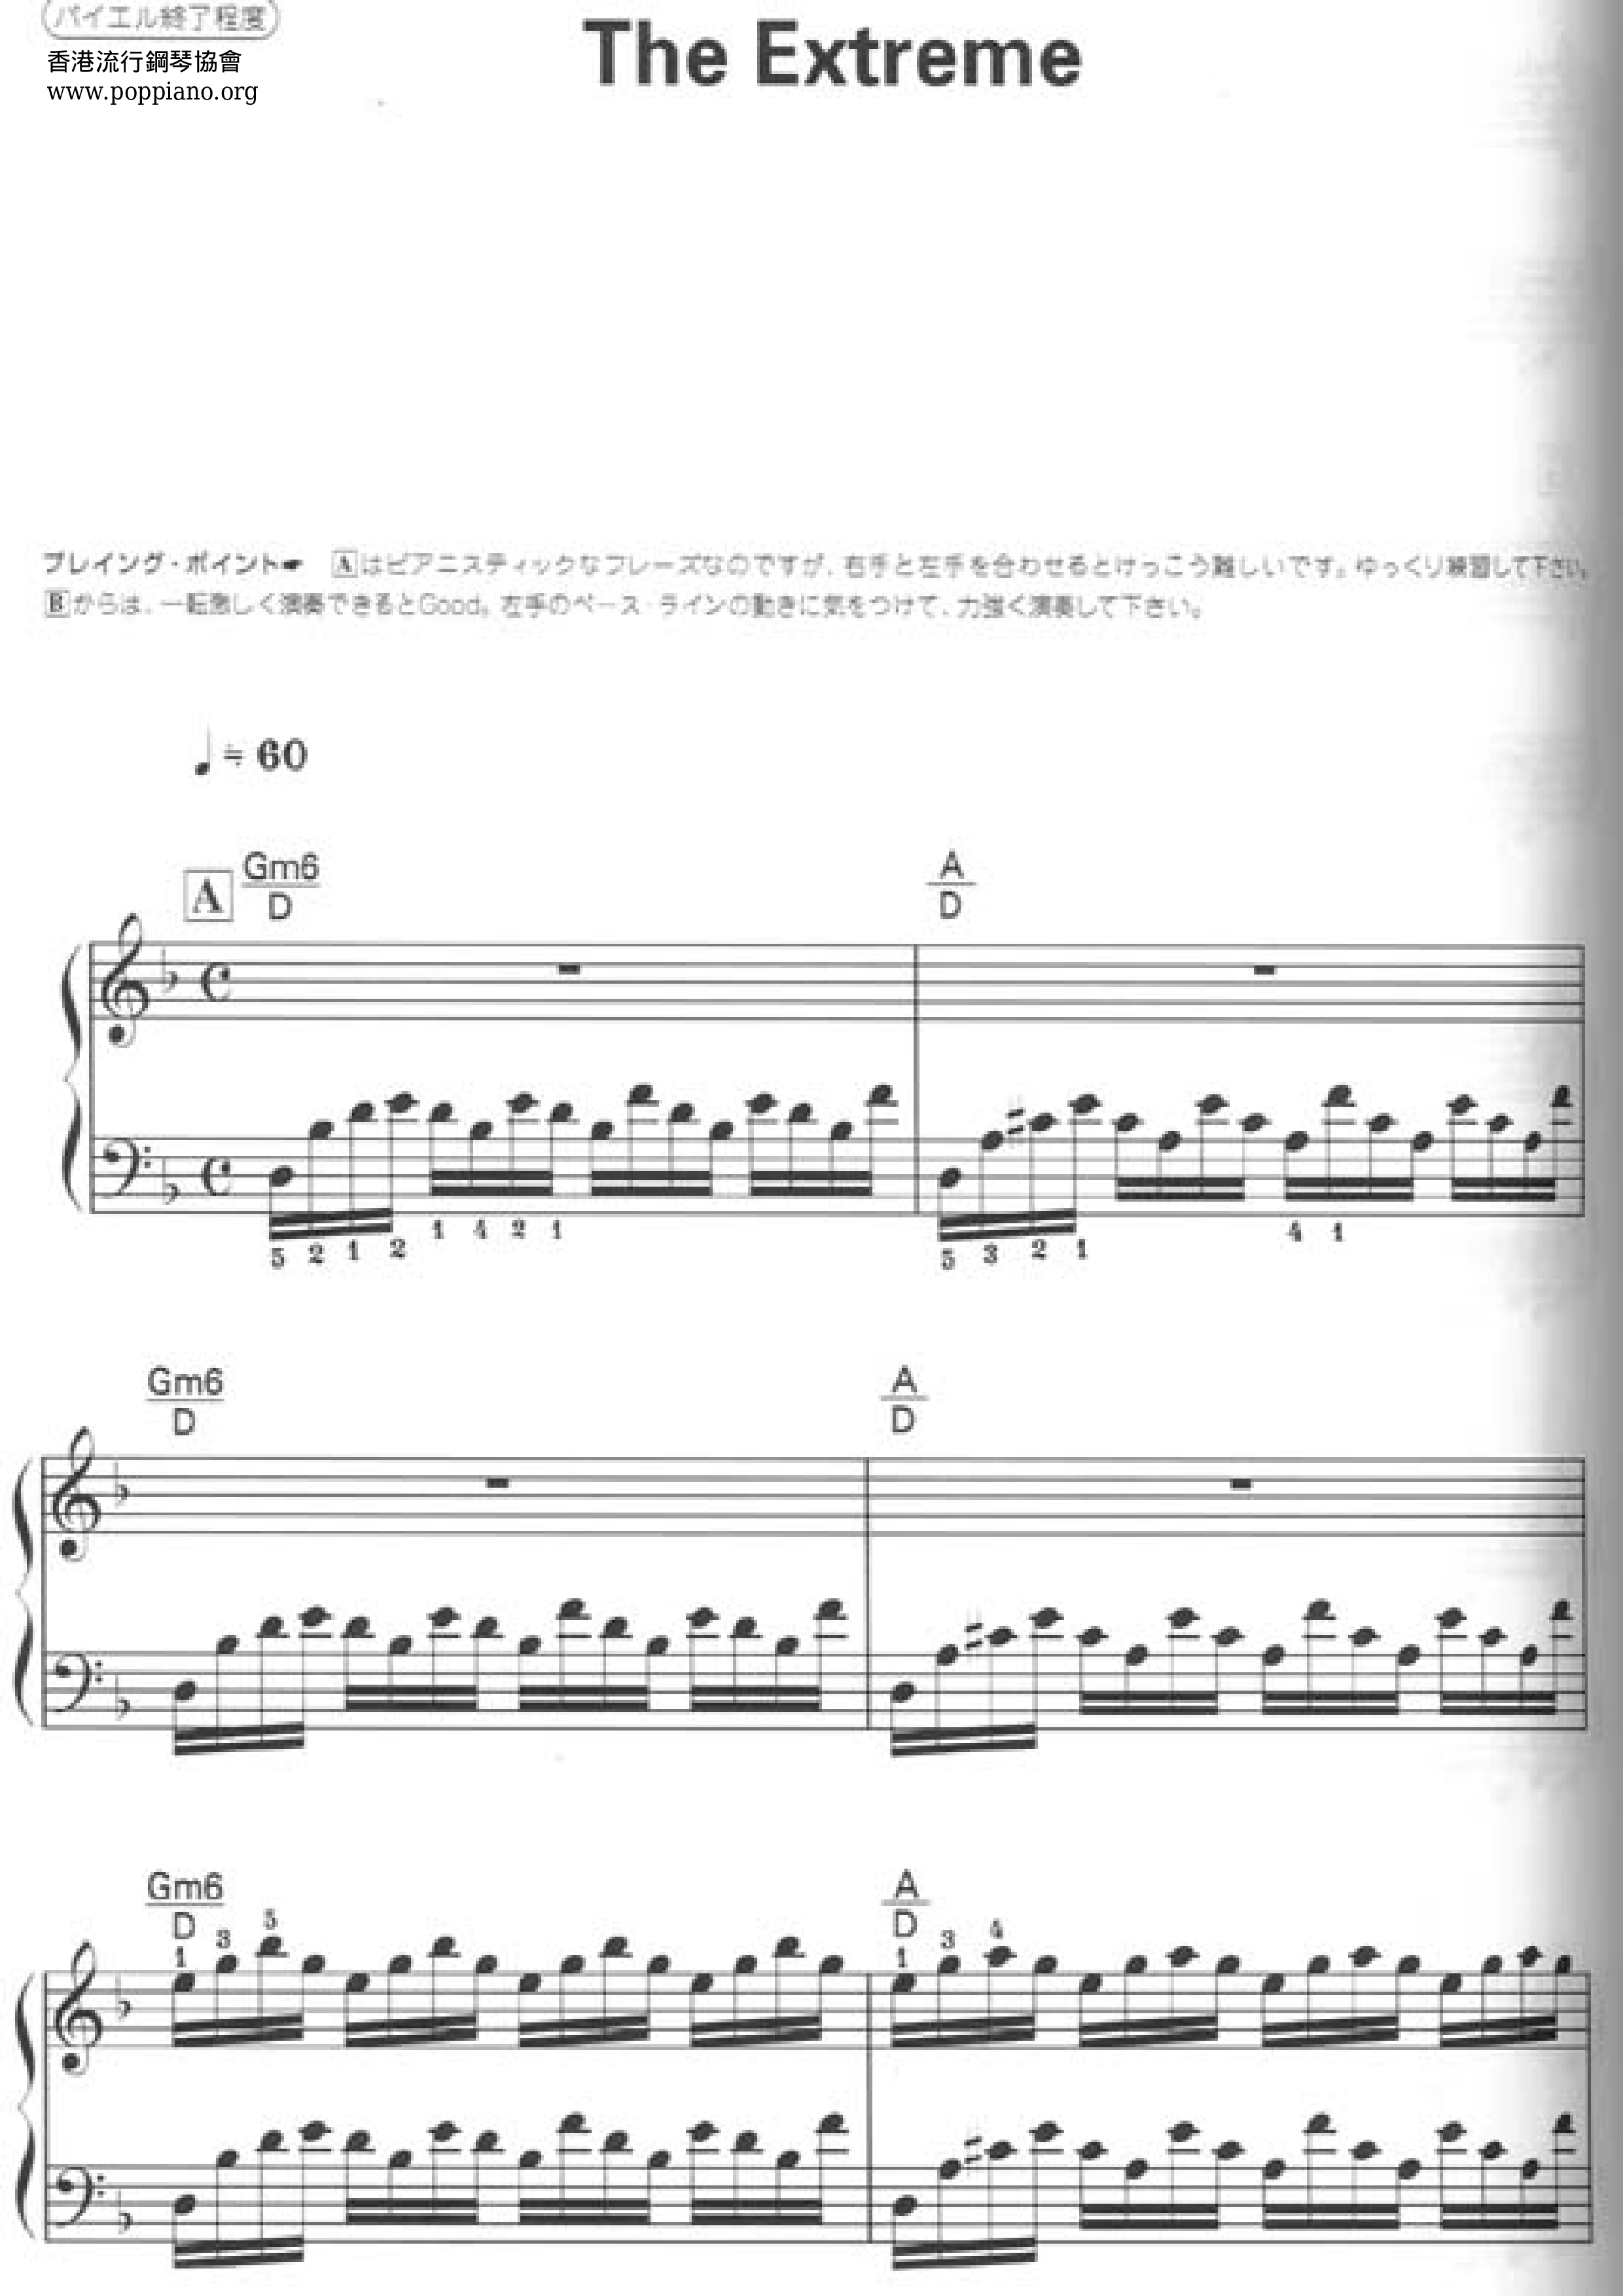 最终幻想8 Final Fantasy Viii The Extreme 琴谱 五线谱pdf 香港流行钢琴协会琴谱下载